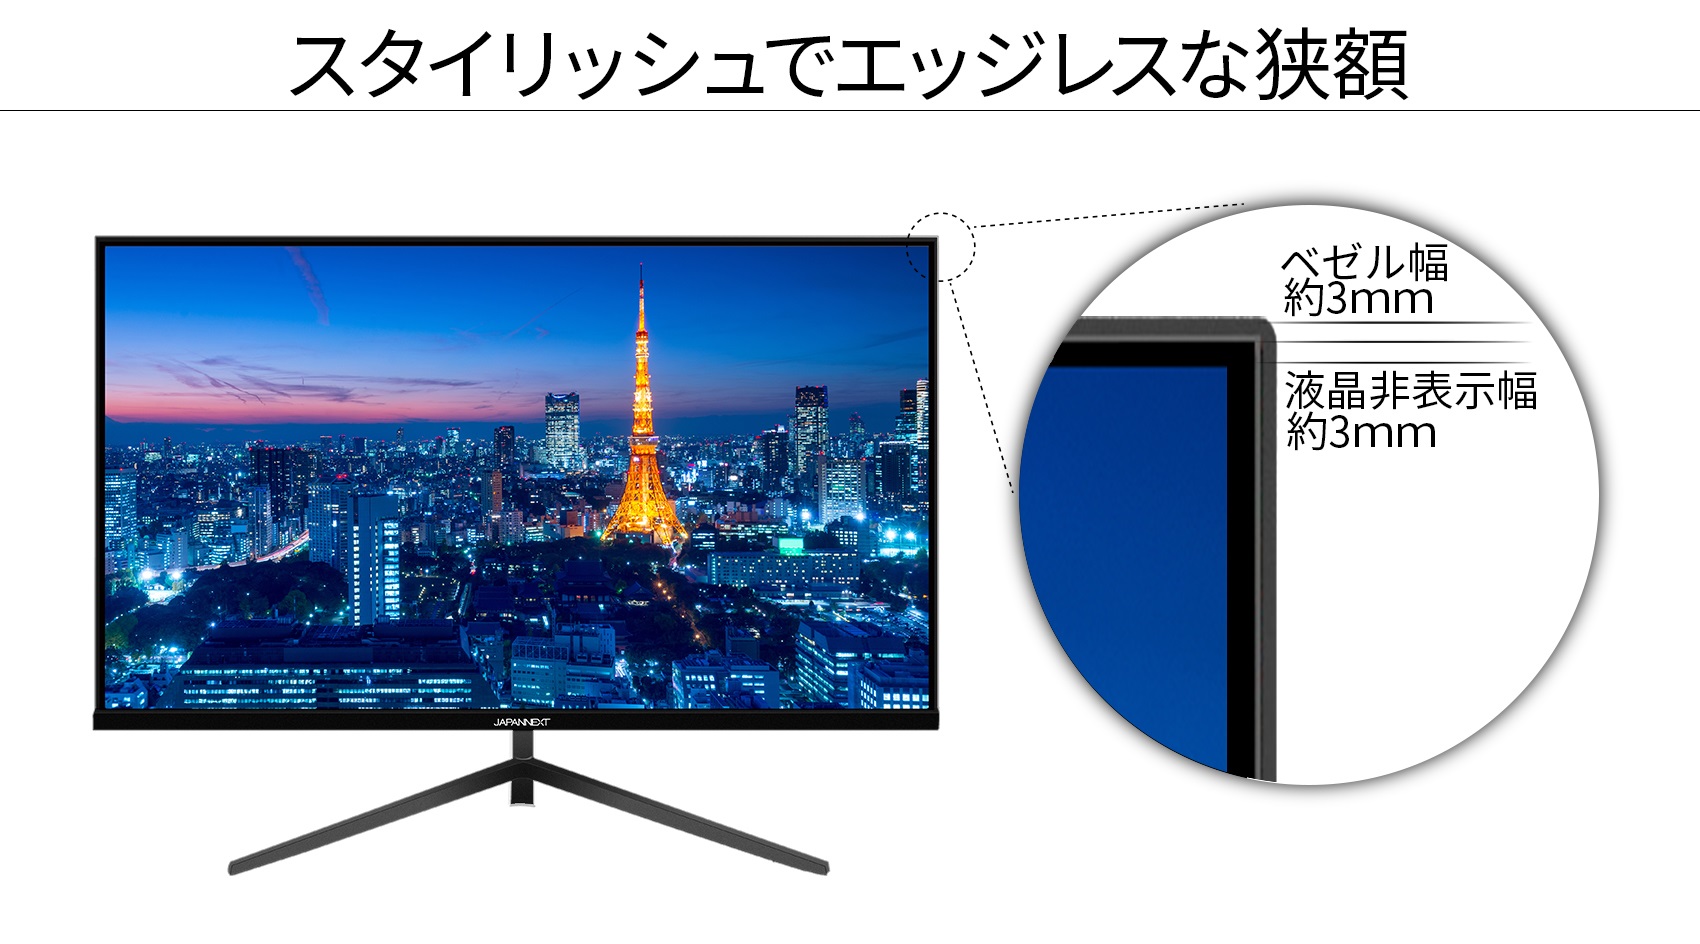 JAPANNEXT 「JN-IPS2380FHDR-C65W」<br>23.8インチIPSパネル搭載フルHD液晶モニター<br>HDMI USB- C(65W給電）※在庫無し 液晶ディスプレイ japannext